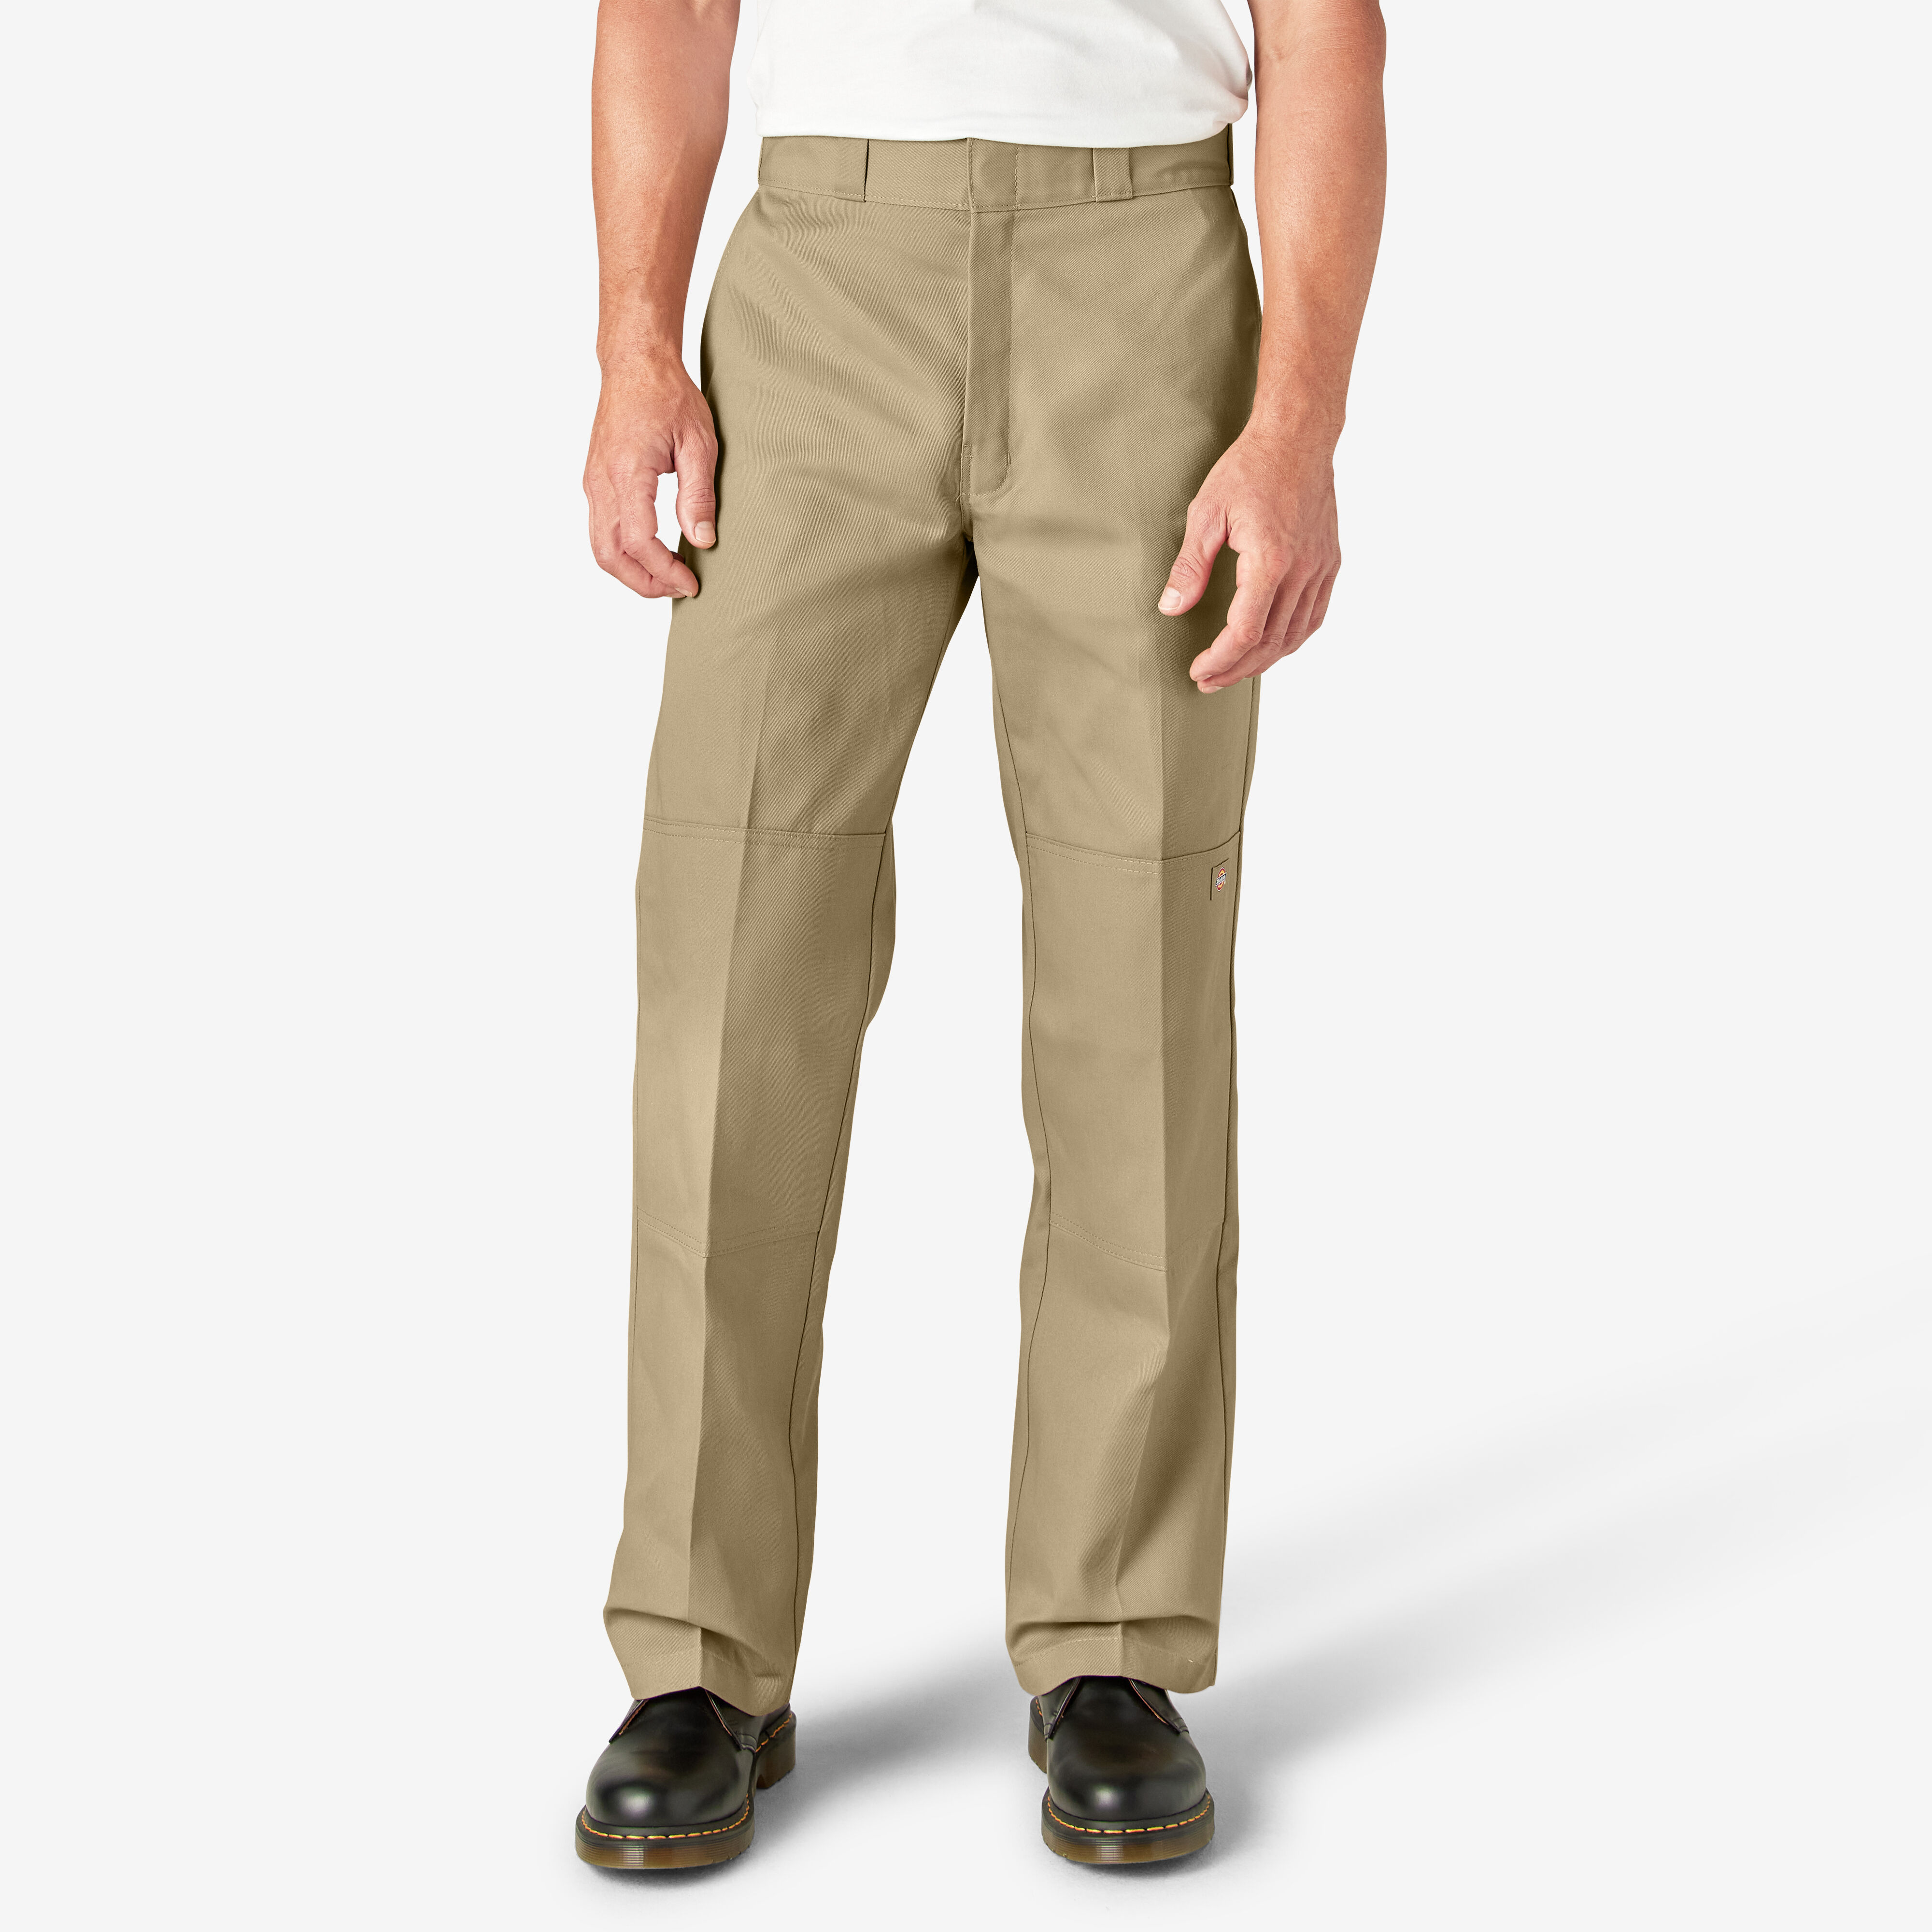 Loose Fit Double Knee Work Pants , Khaki Size 31 32 | Men's Pants